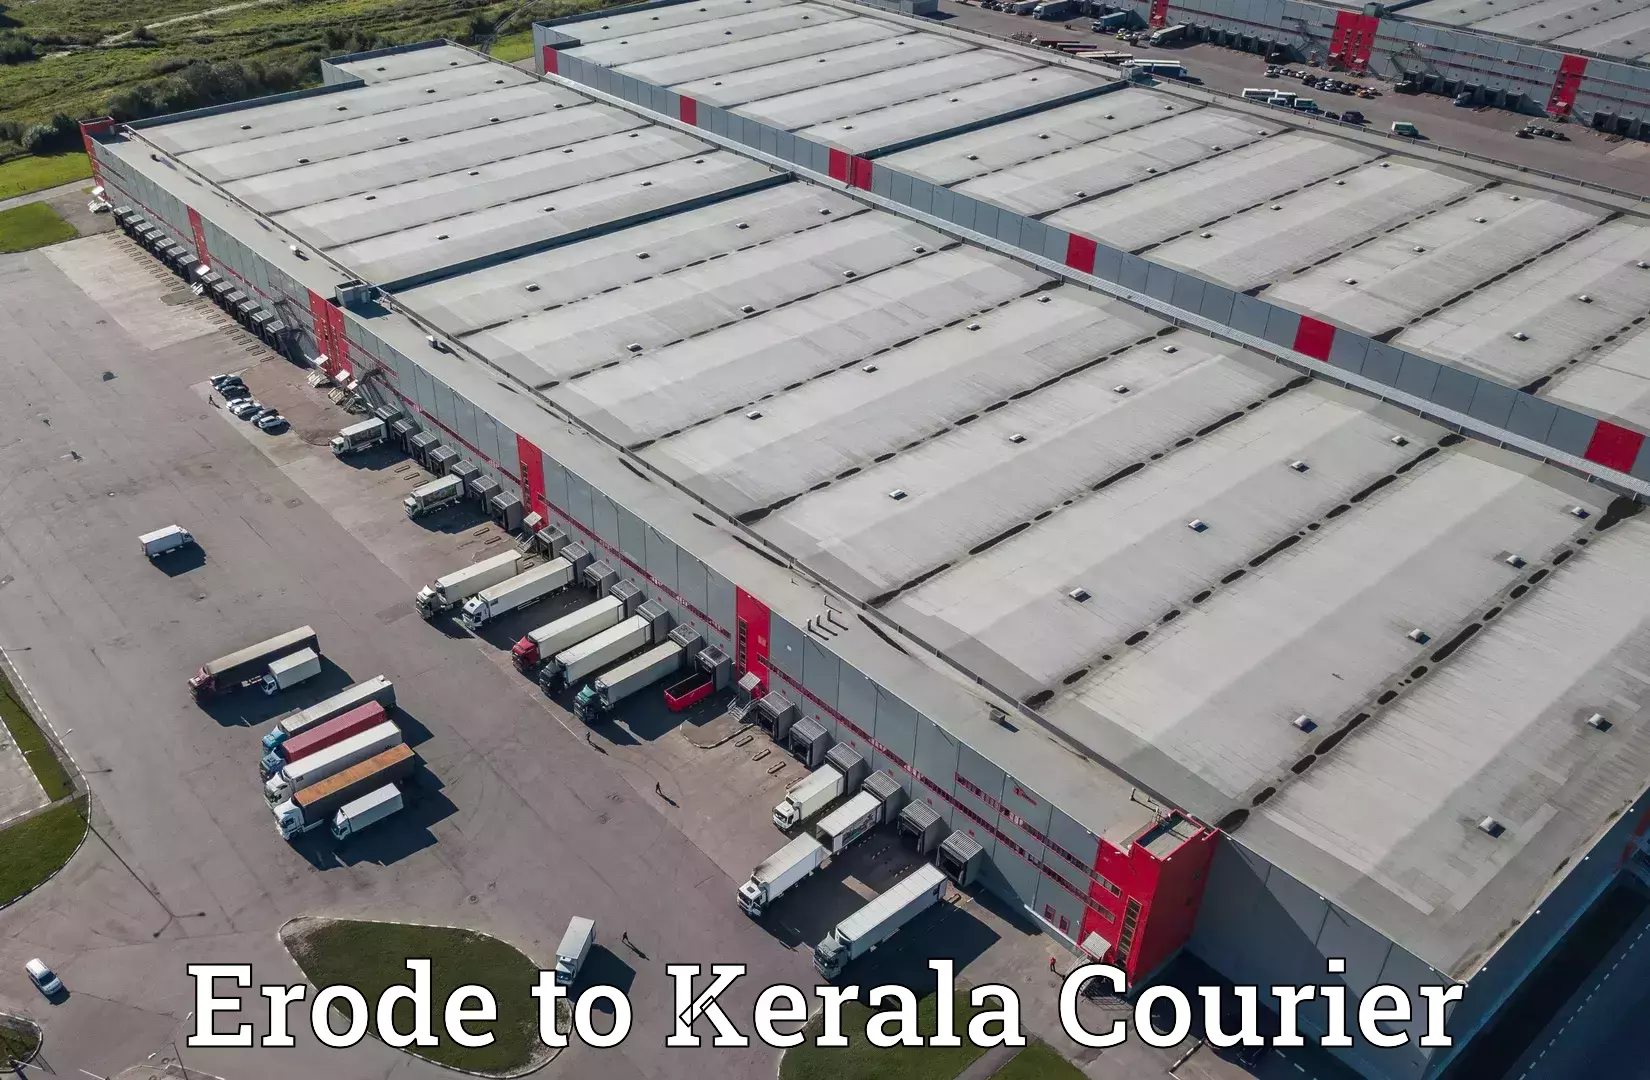 Tech-enabled shipping Erode to Kerala